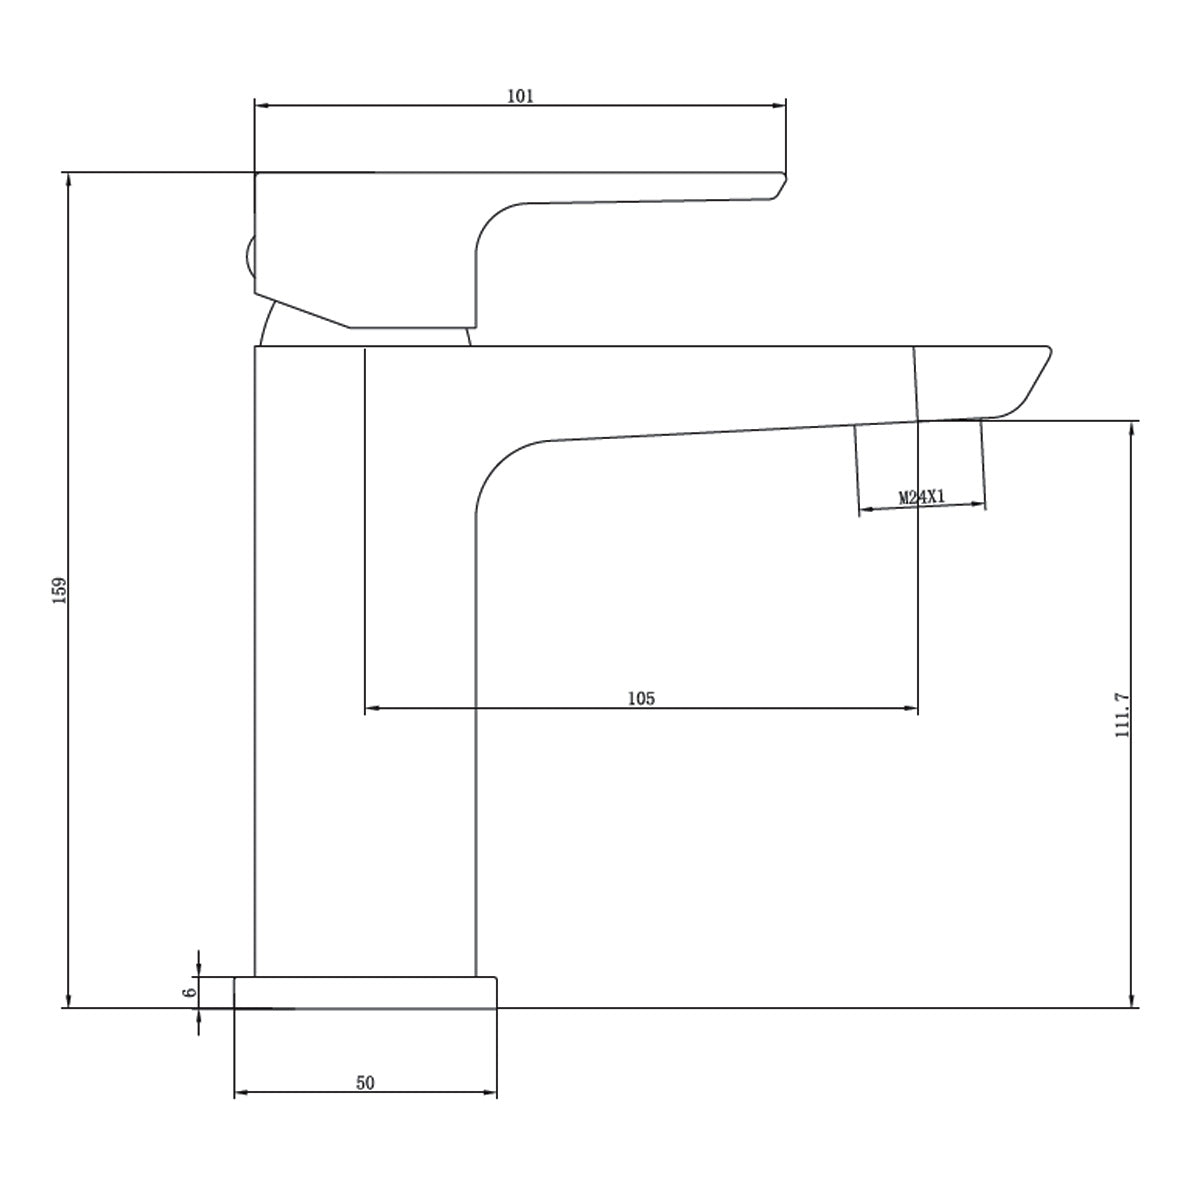 deluxe greenwich basin mono mixer tap dimensions